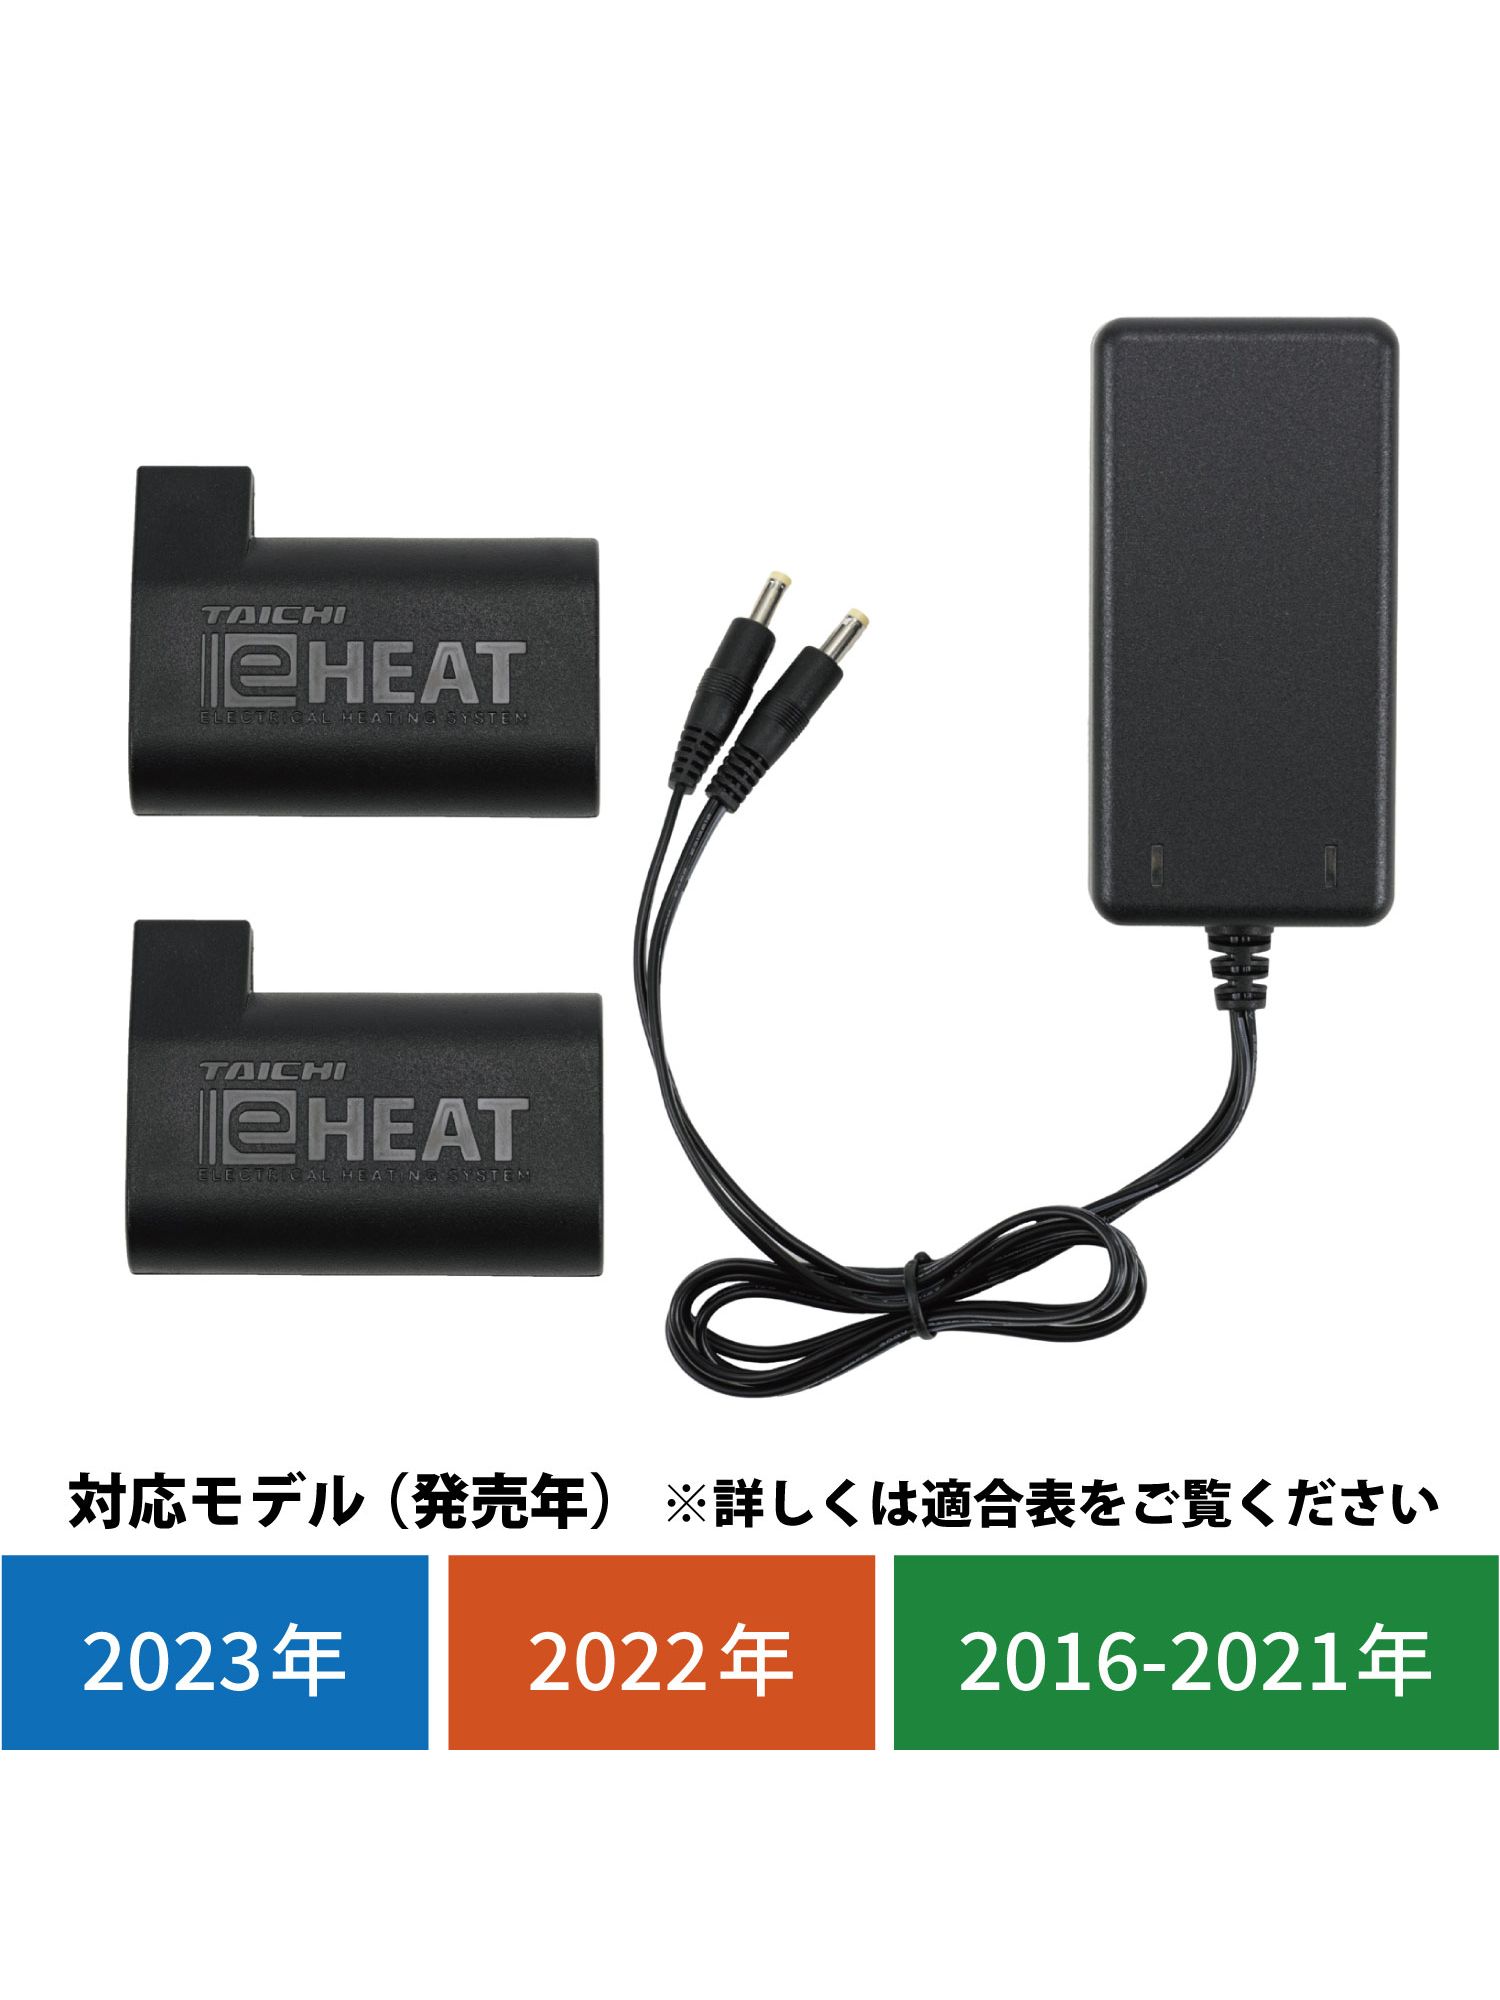 タイチ公式通販】RSP064 | e-HEAT 7.2V充電器&バッテリーセット | TAICHI